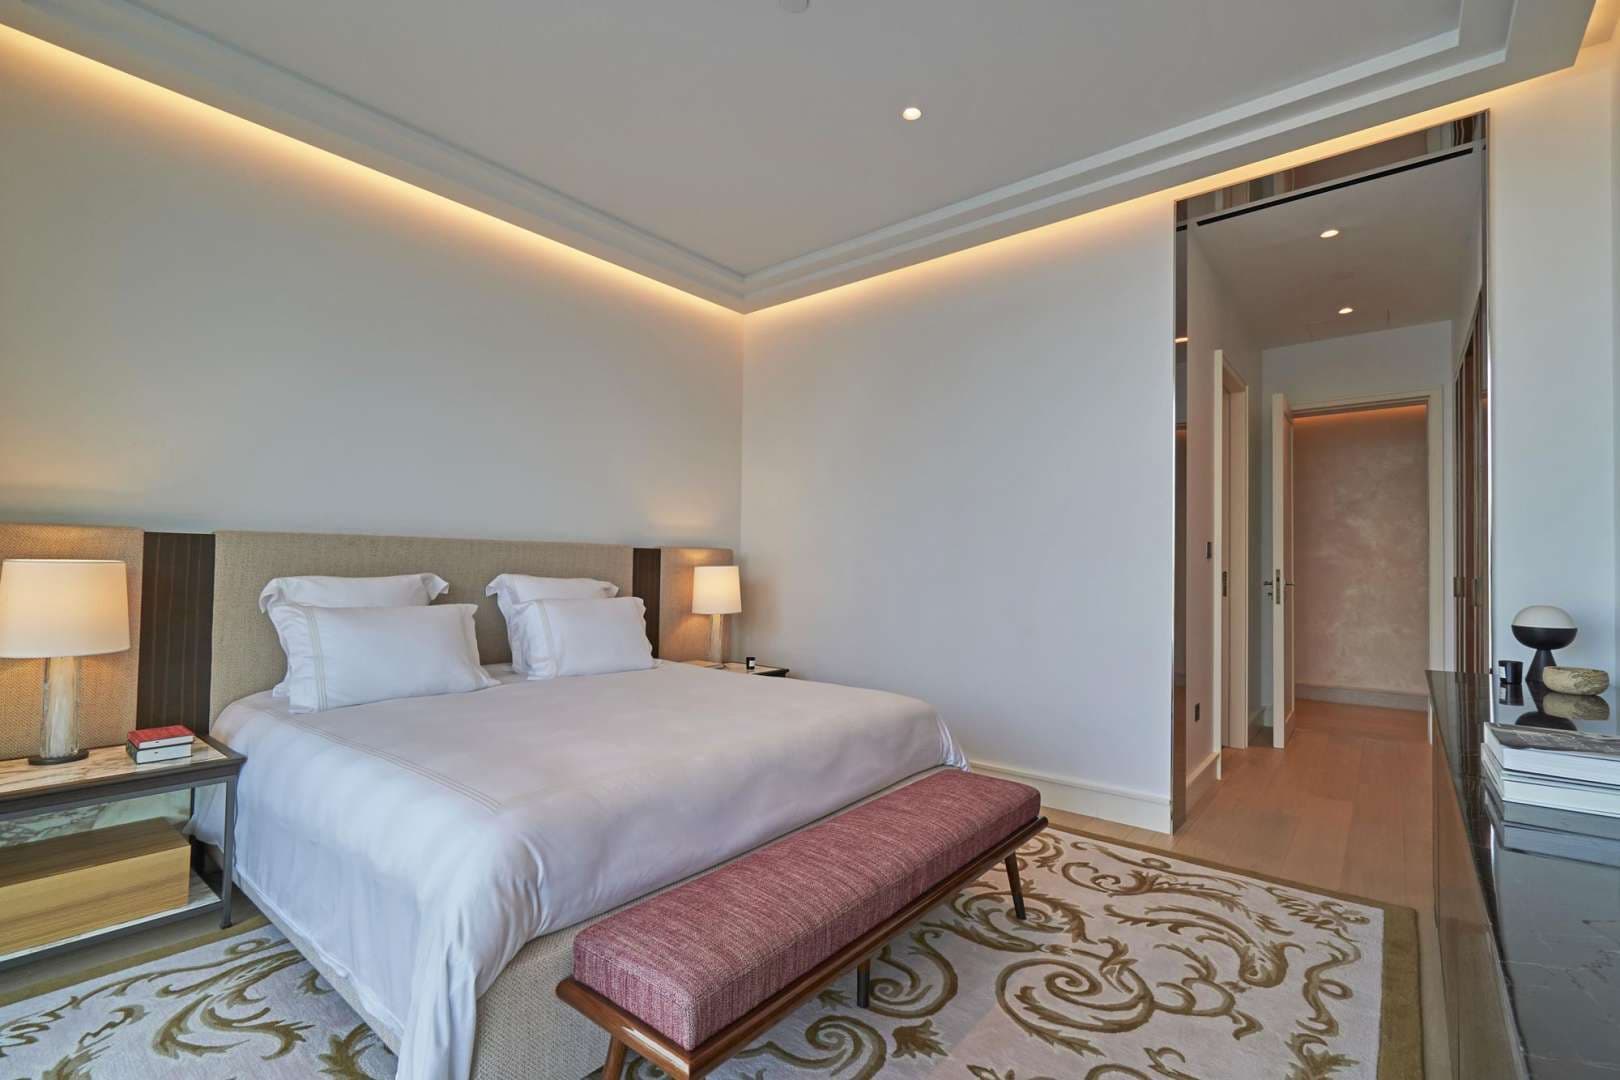 2 Bedroom Apartment For Sale The Residences Dorchester Collection Dubai Lp05253 2aea61ea4d6de200.jpg